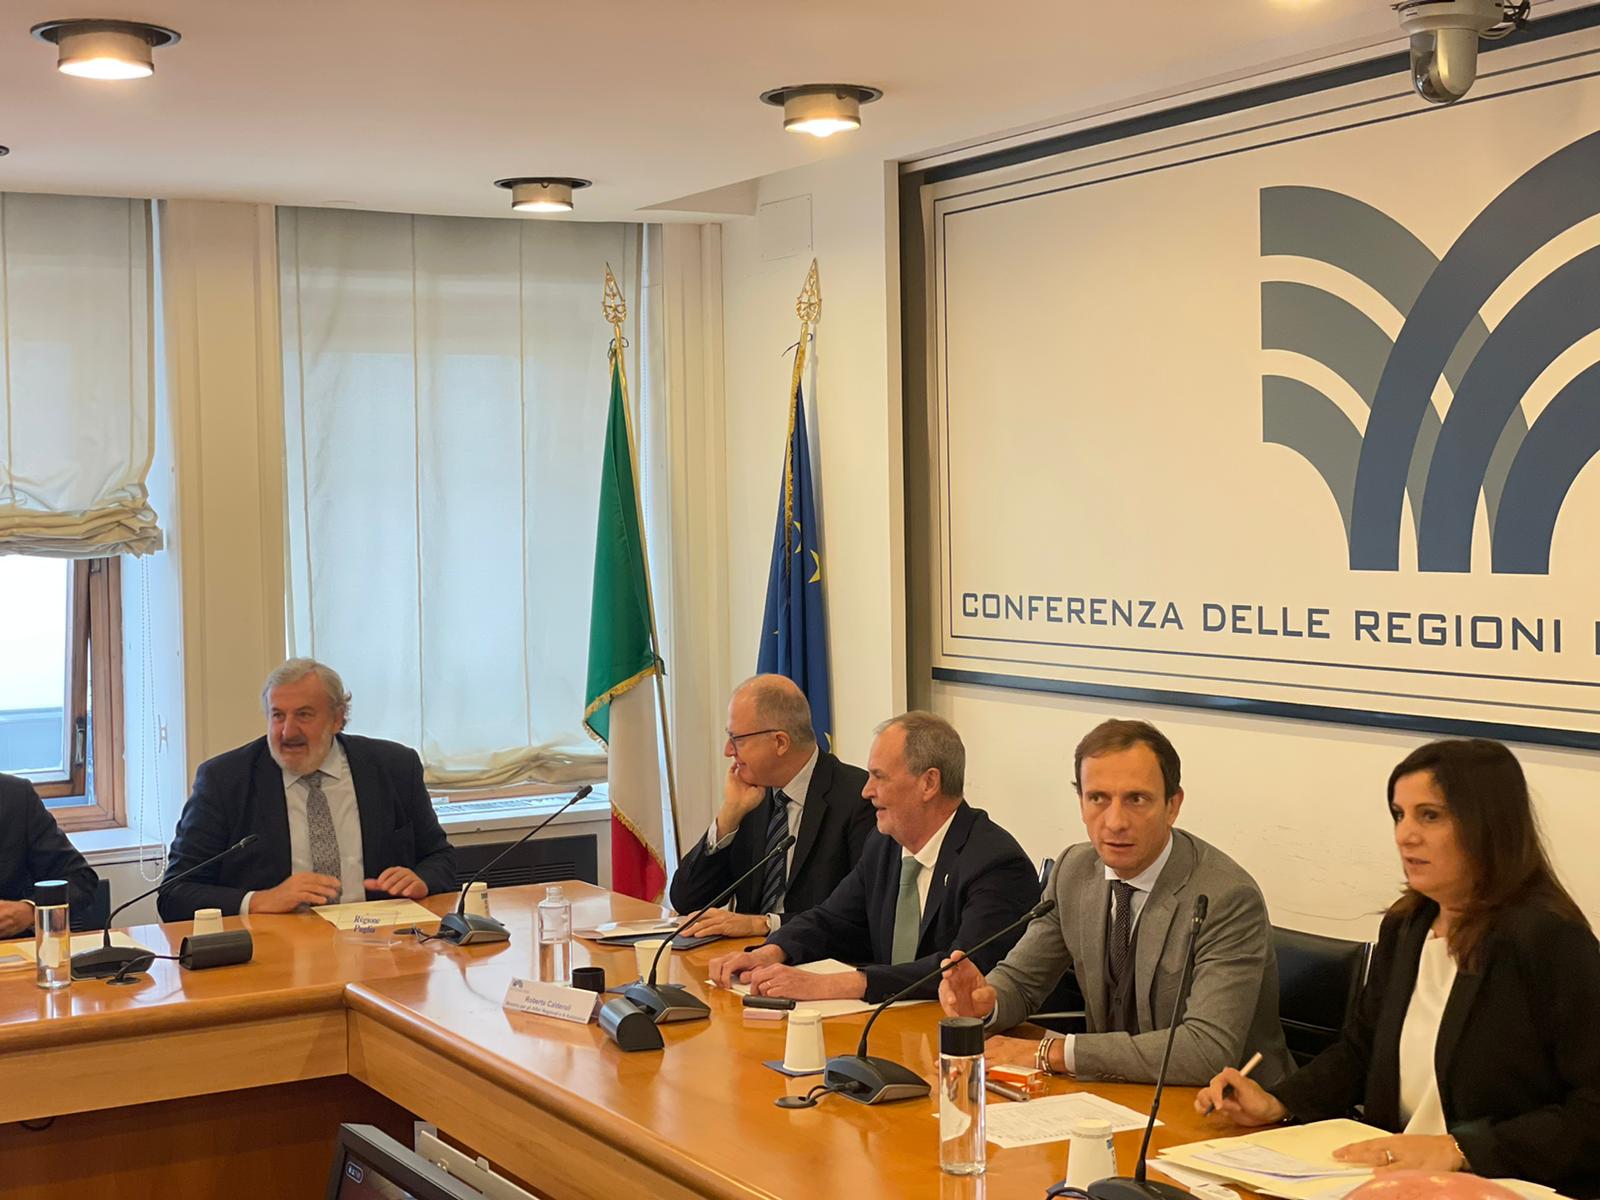 Conferenza delle Regioni alla presenza del Ministro Calderoli